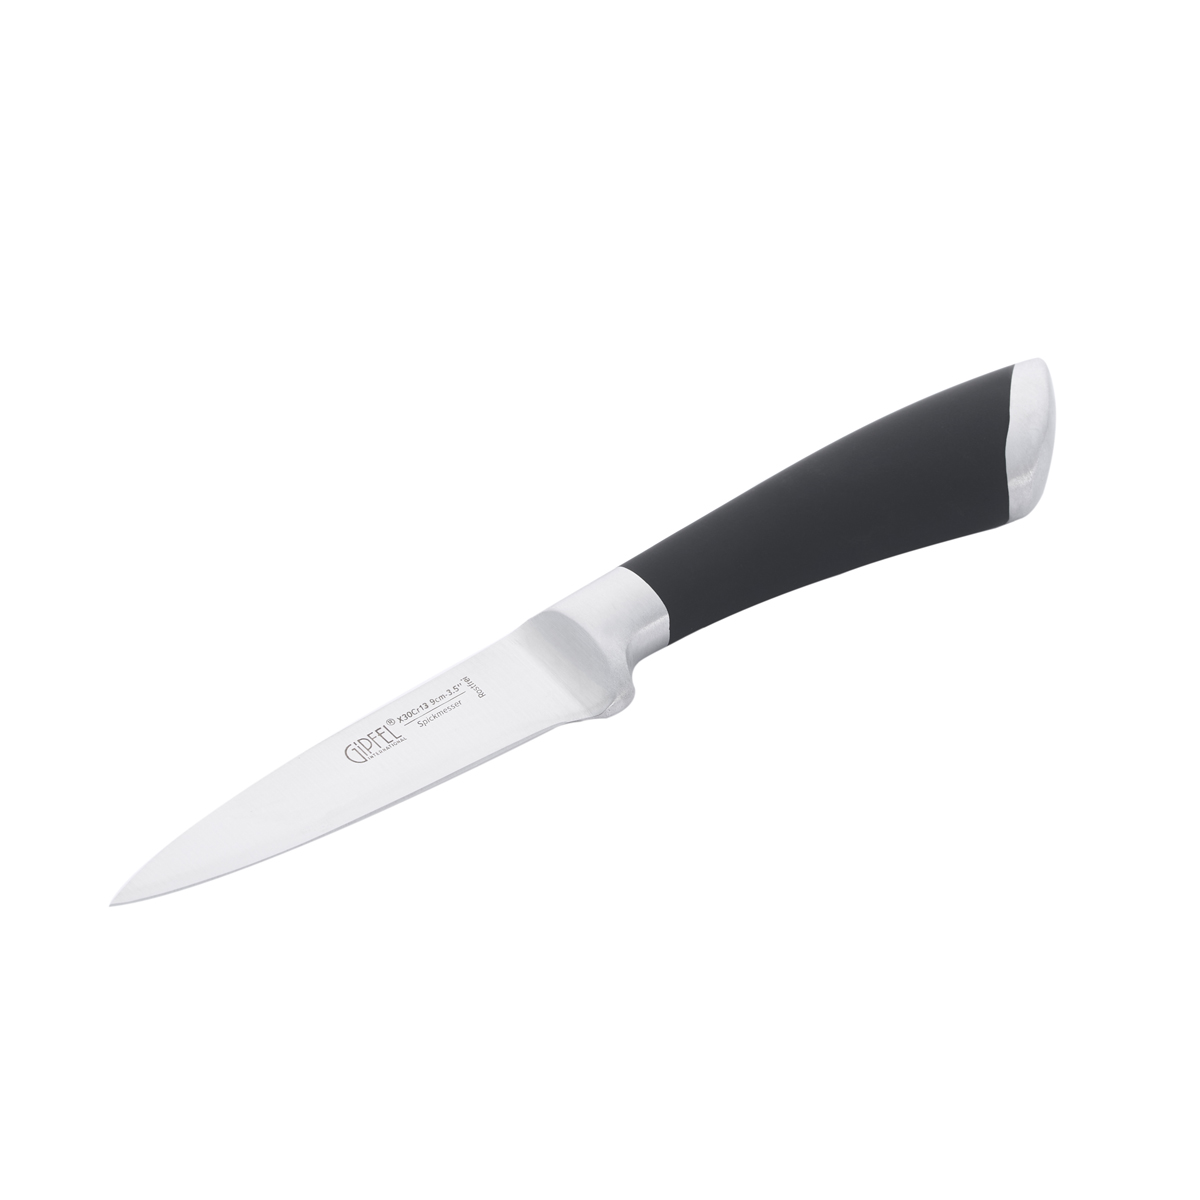 Нож для чистки овощей Gipfel Mirella 6840 9 см нож для чистки овощей gipfel vilmarin 9 см